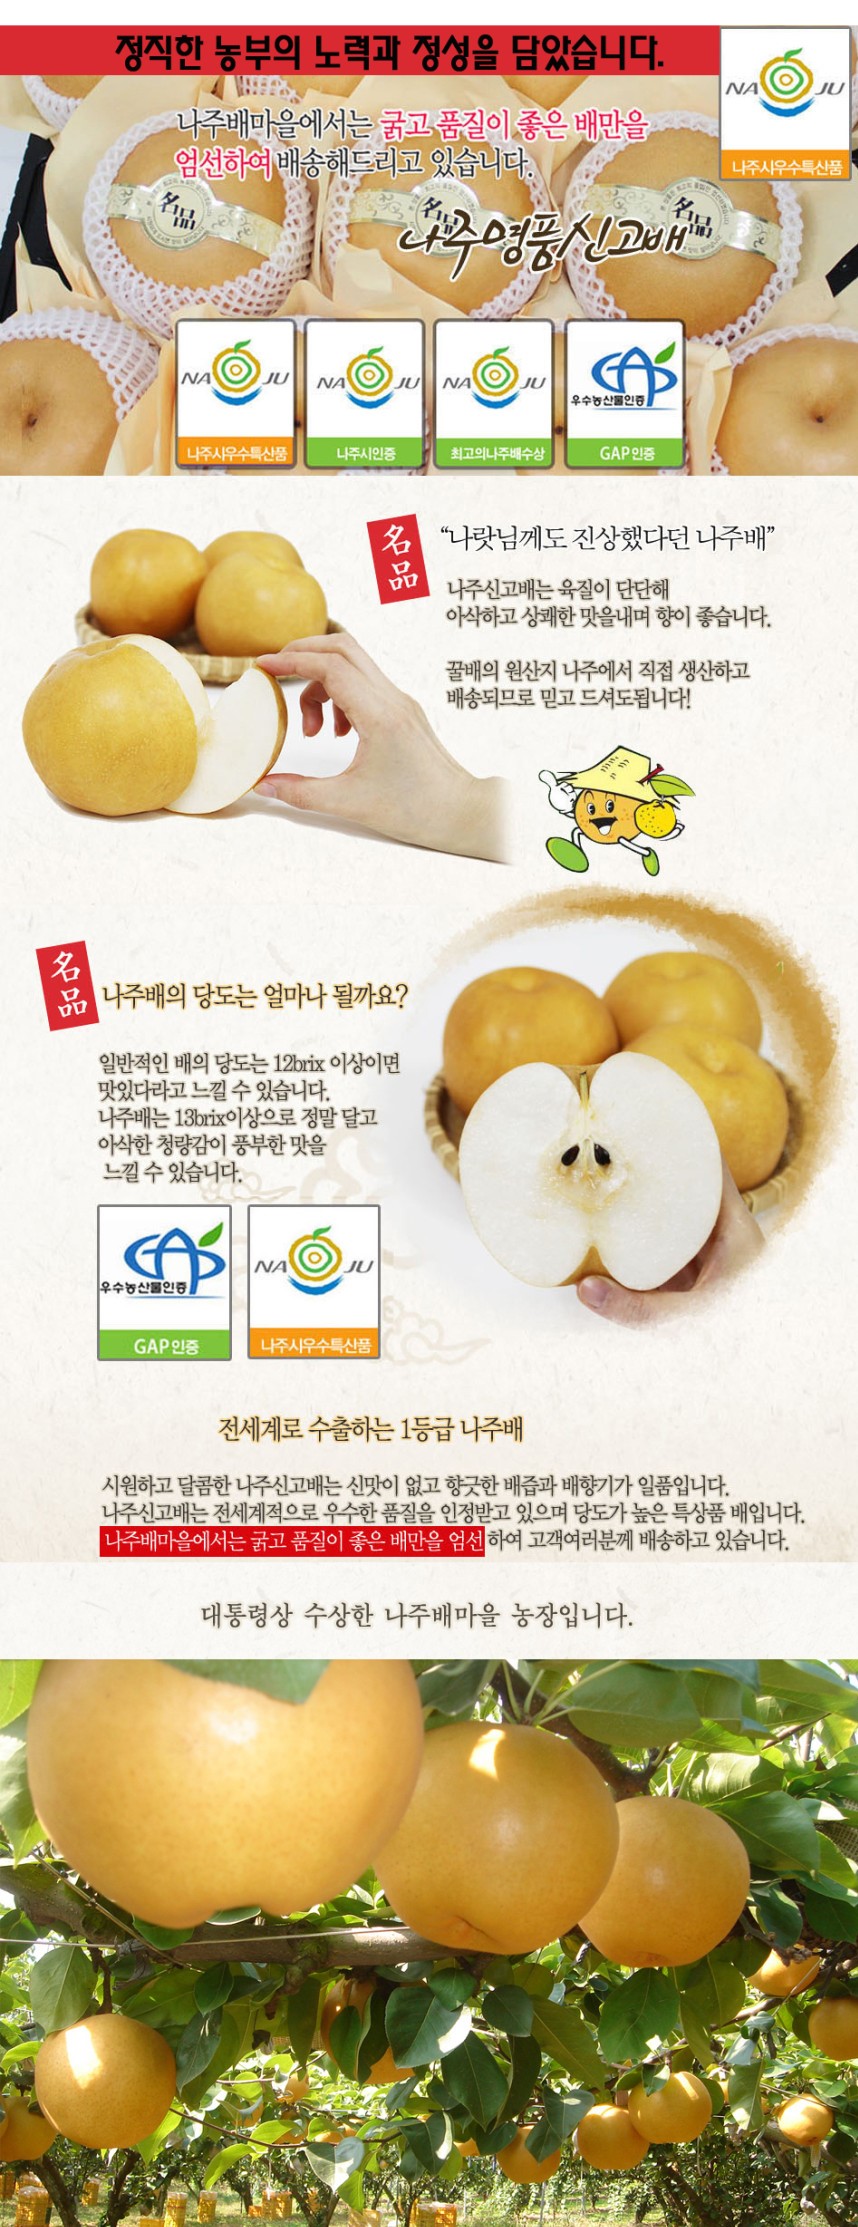 韓國食品-[$70 for 2ea ] 韓國名品梨 1ea